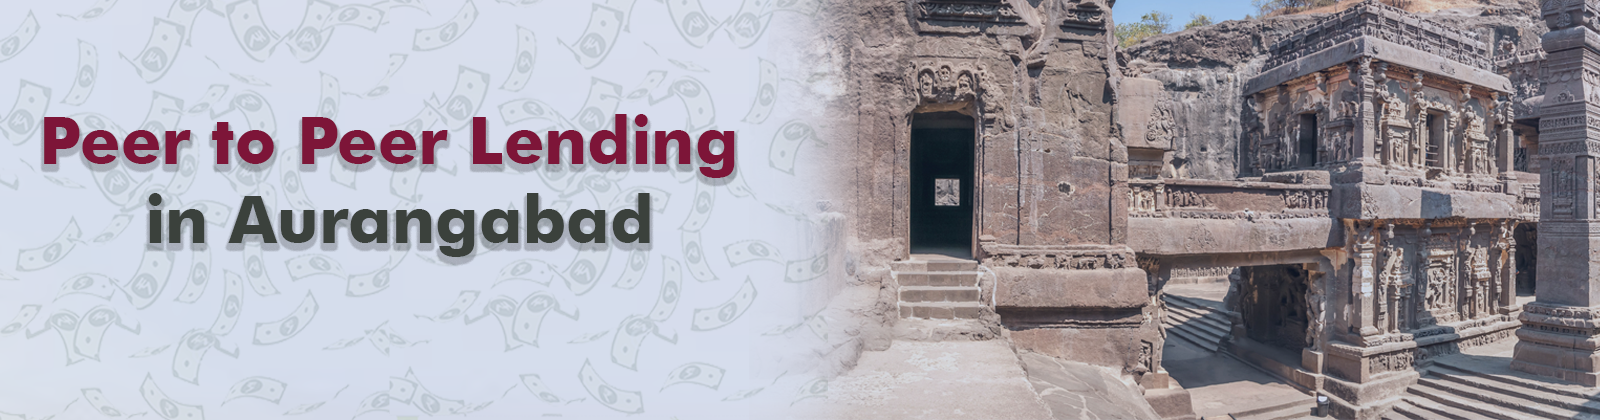 Peer to Peer Lending in Aurangabad